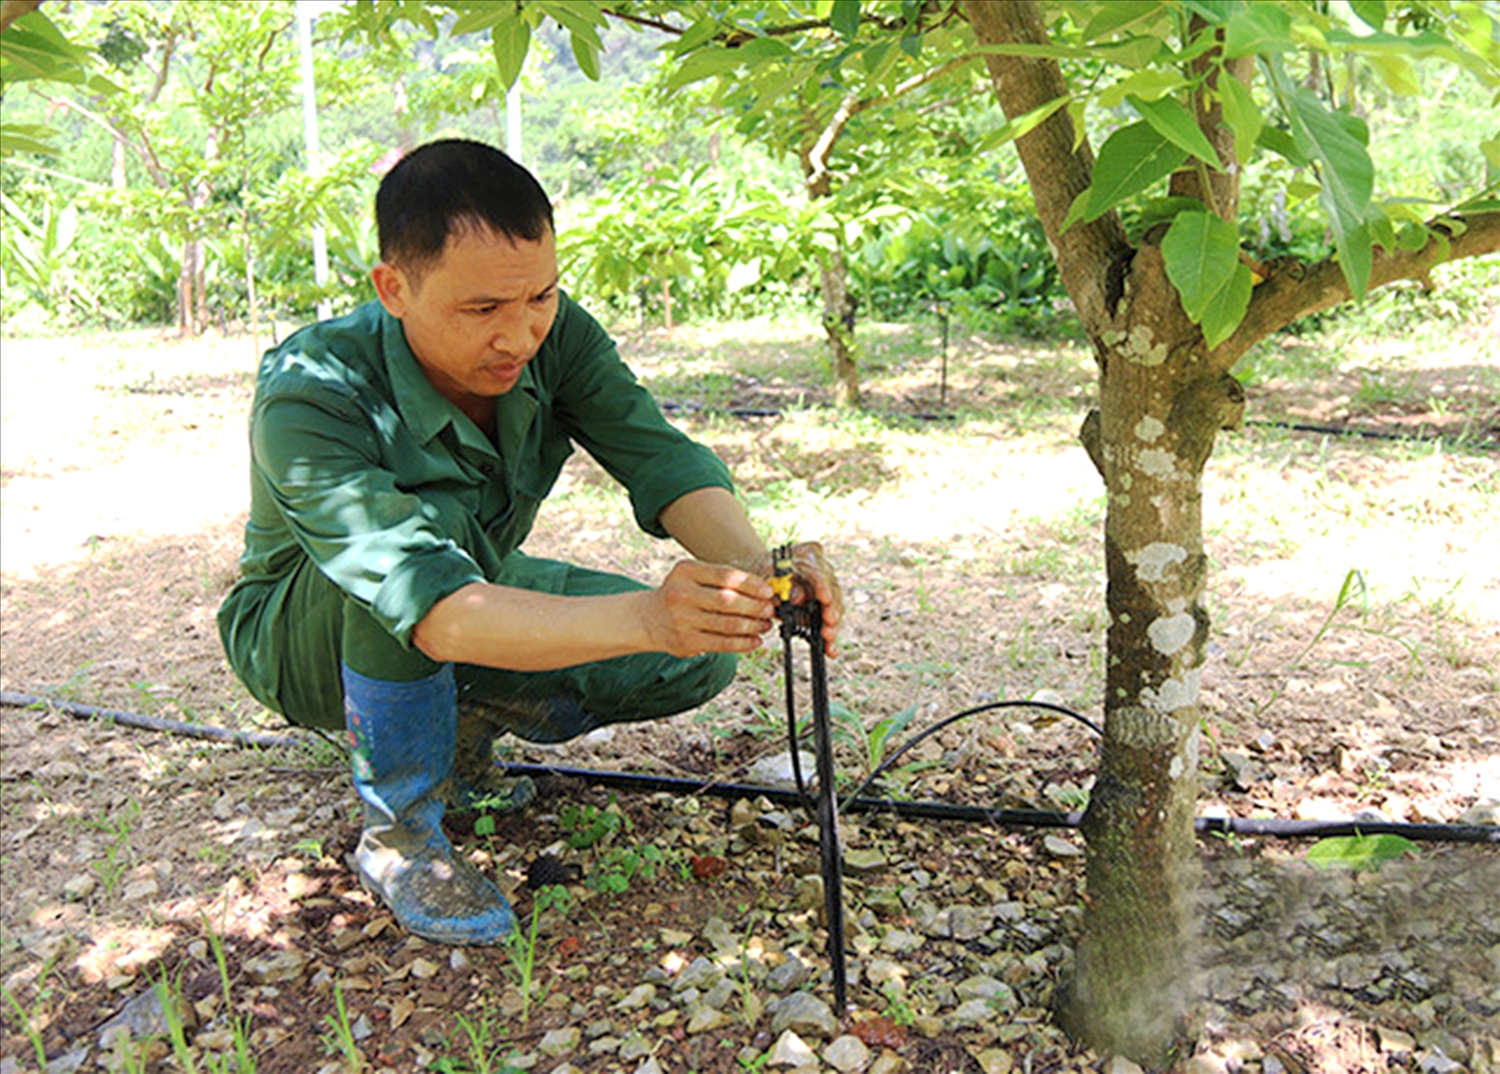  Mô hình chăm sóc cây ăn quả tự động ở Thôn Quán Thanh, xã Chi Lăng, huyện Chi Lăng giúp tiết kiệm được nhiều thời gian, công sức cho người dân